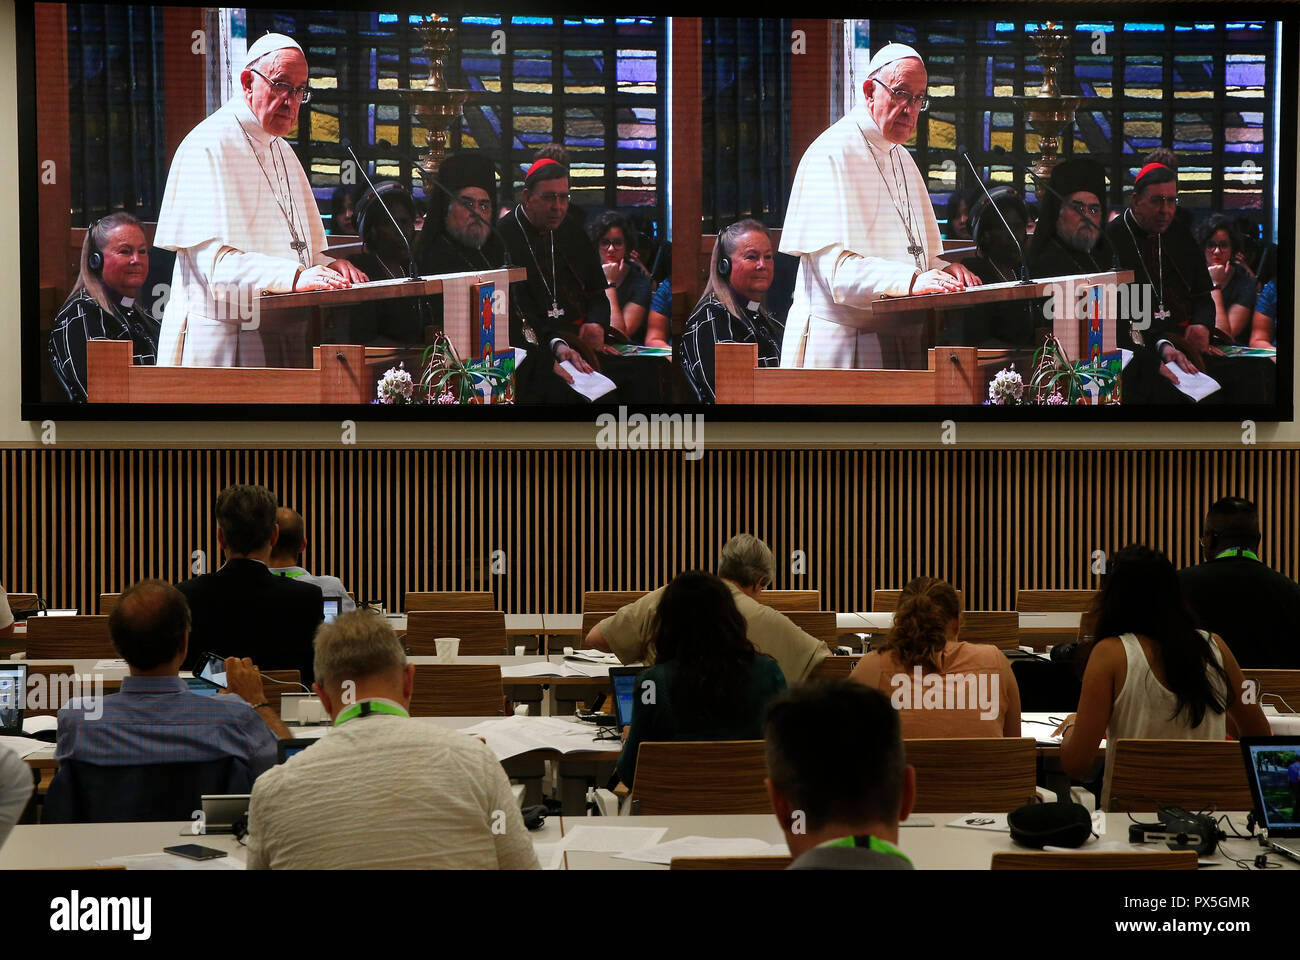 Il 21 giugno 2018, il Consiglio Mondiale delle Chiese riceve la visita del Santo Padre Francesco della Chiesa Cattolica Romana. Servizio ecumenico di preghiera vista da th Foto Stock